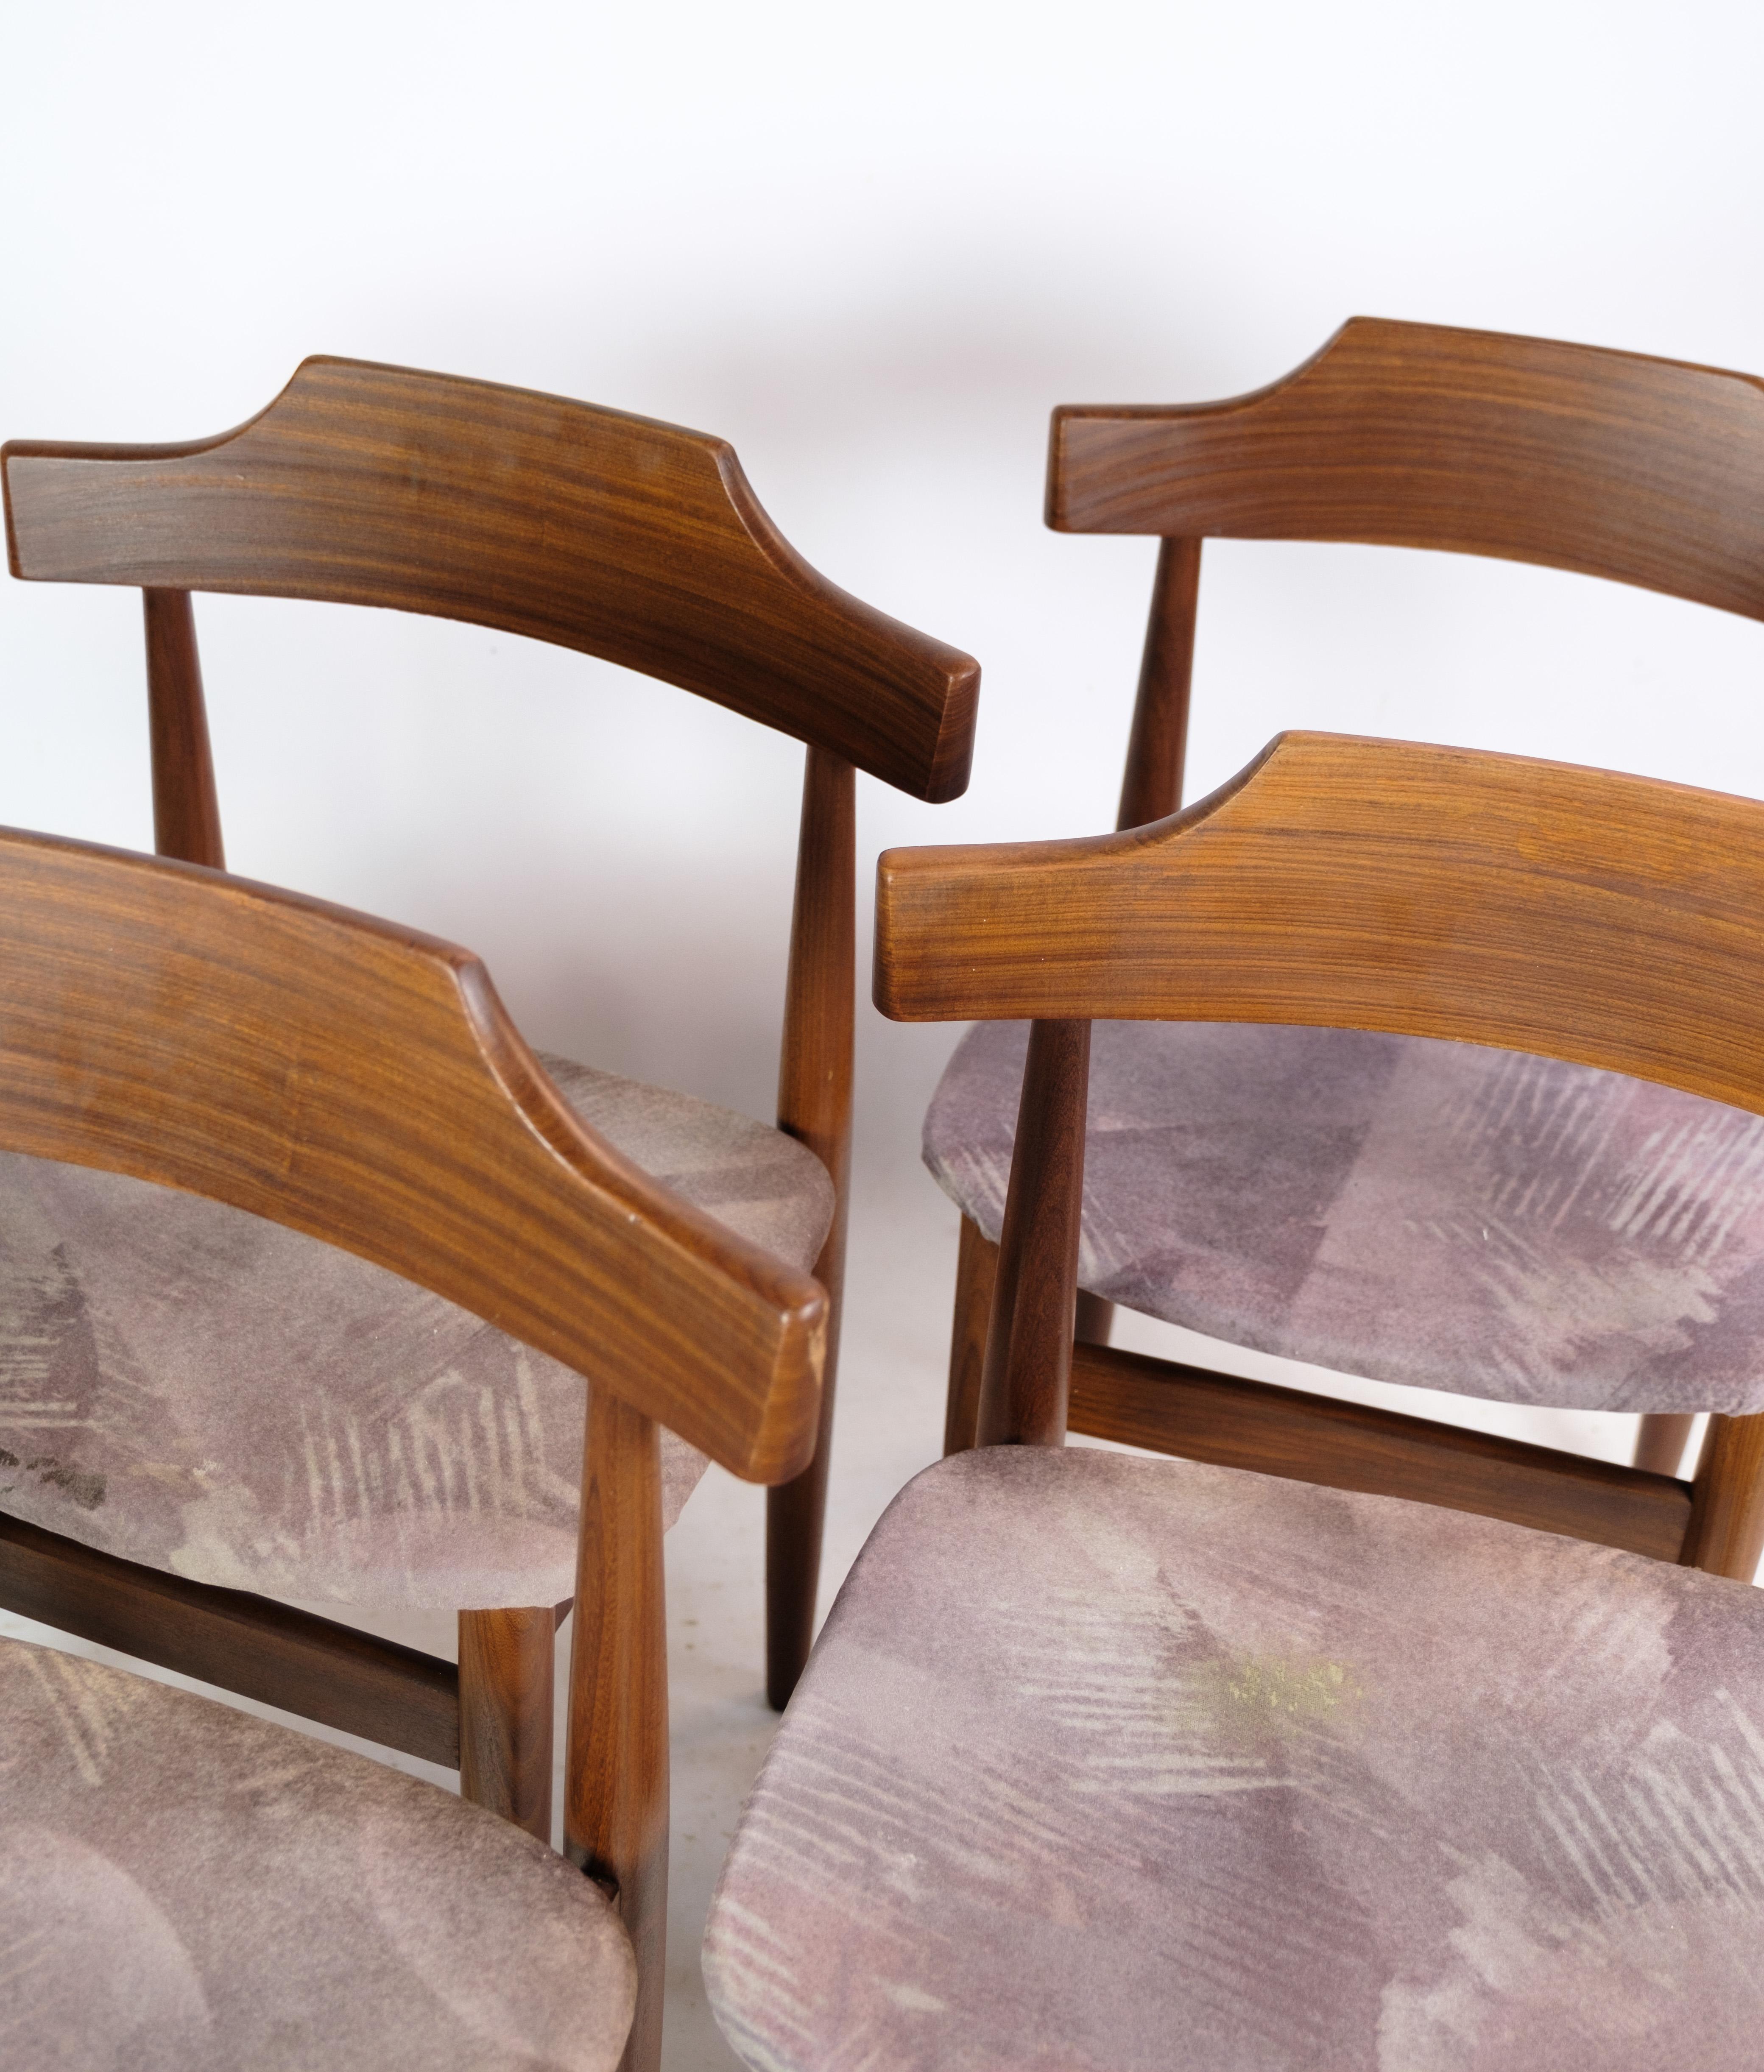 Set aus 4 Esszimmerstühlen aus Teakholz und grauem Stoff, entworfen von Hans Olsen in den 1960er Jahren. Die Stühle sind in einem guten gebrauchten Zustand.

Dieses Produkt wird in unserer Fachwerkstatt von unseren geschulten Mitarbeitern